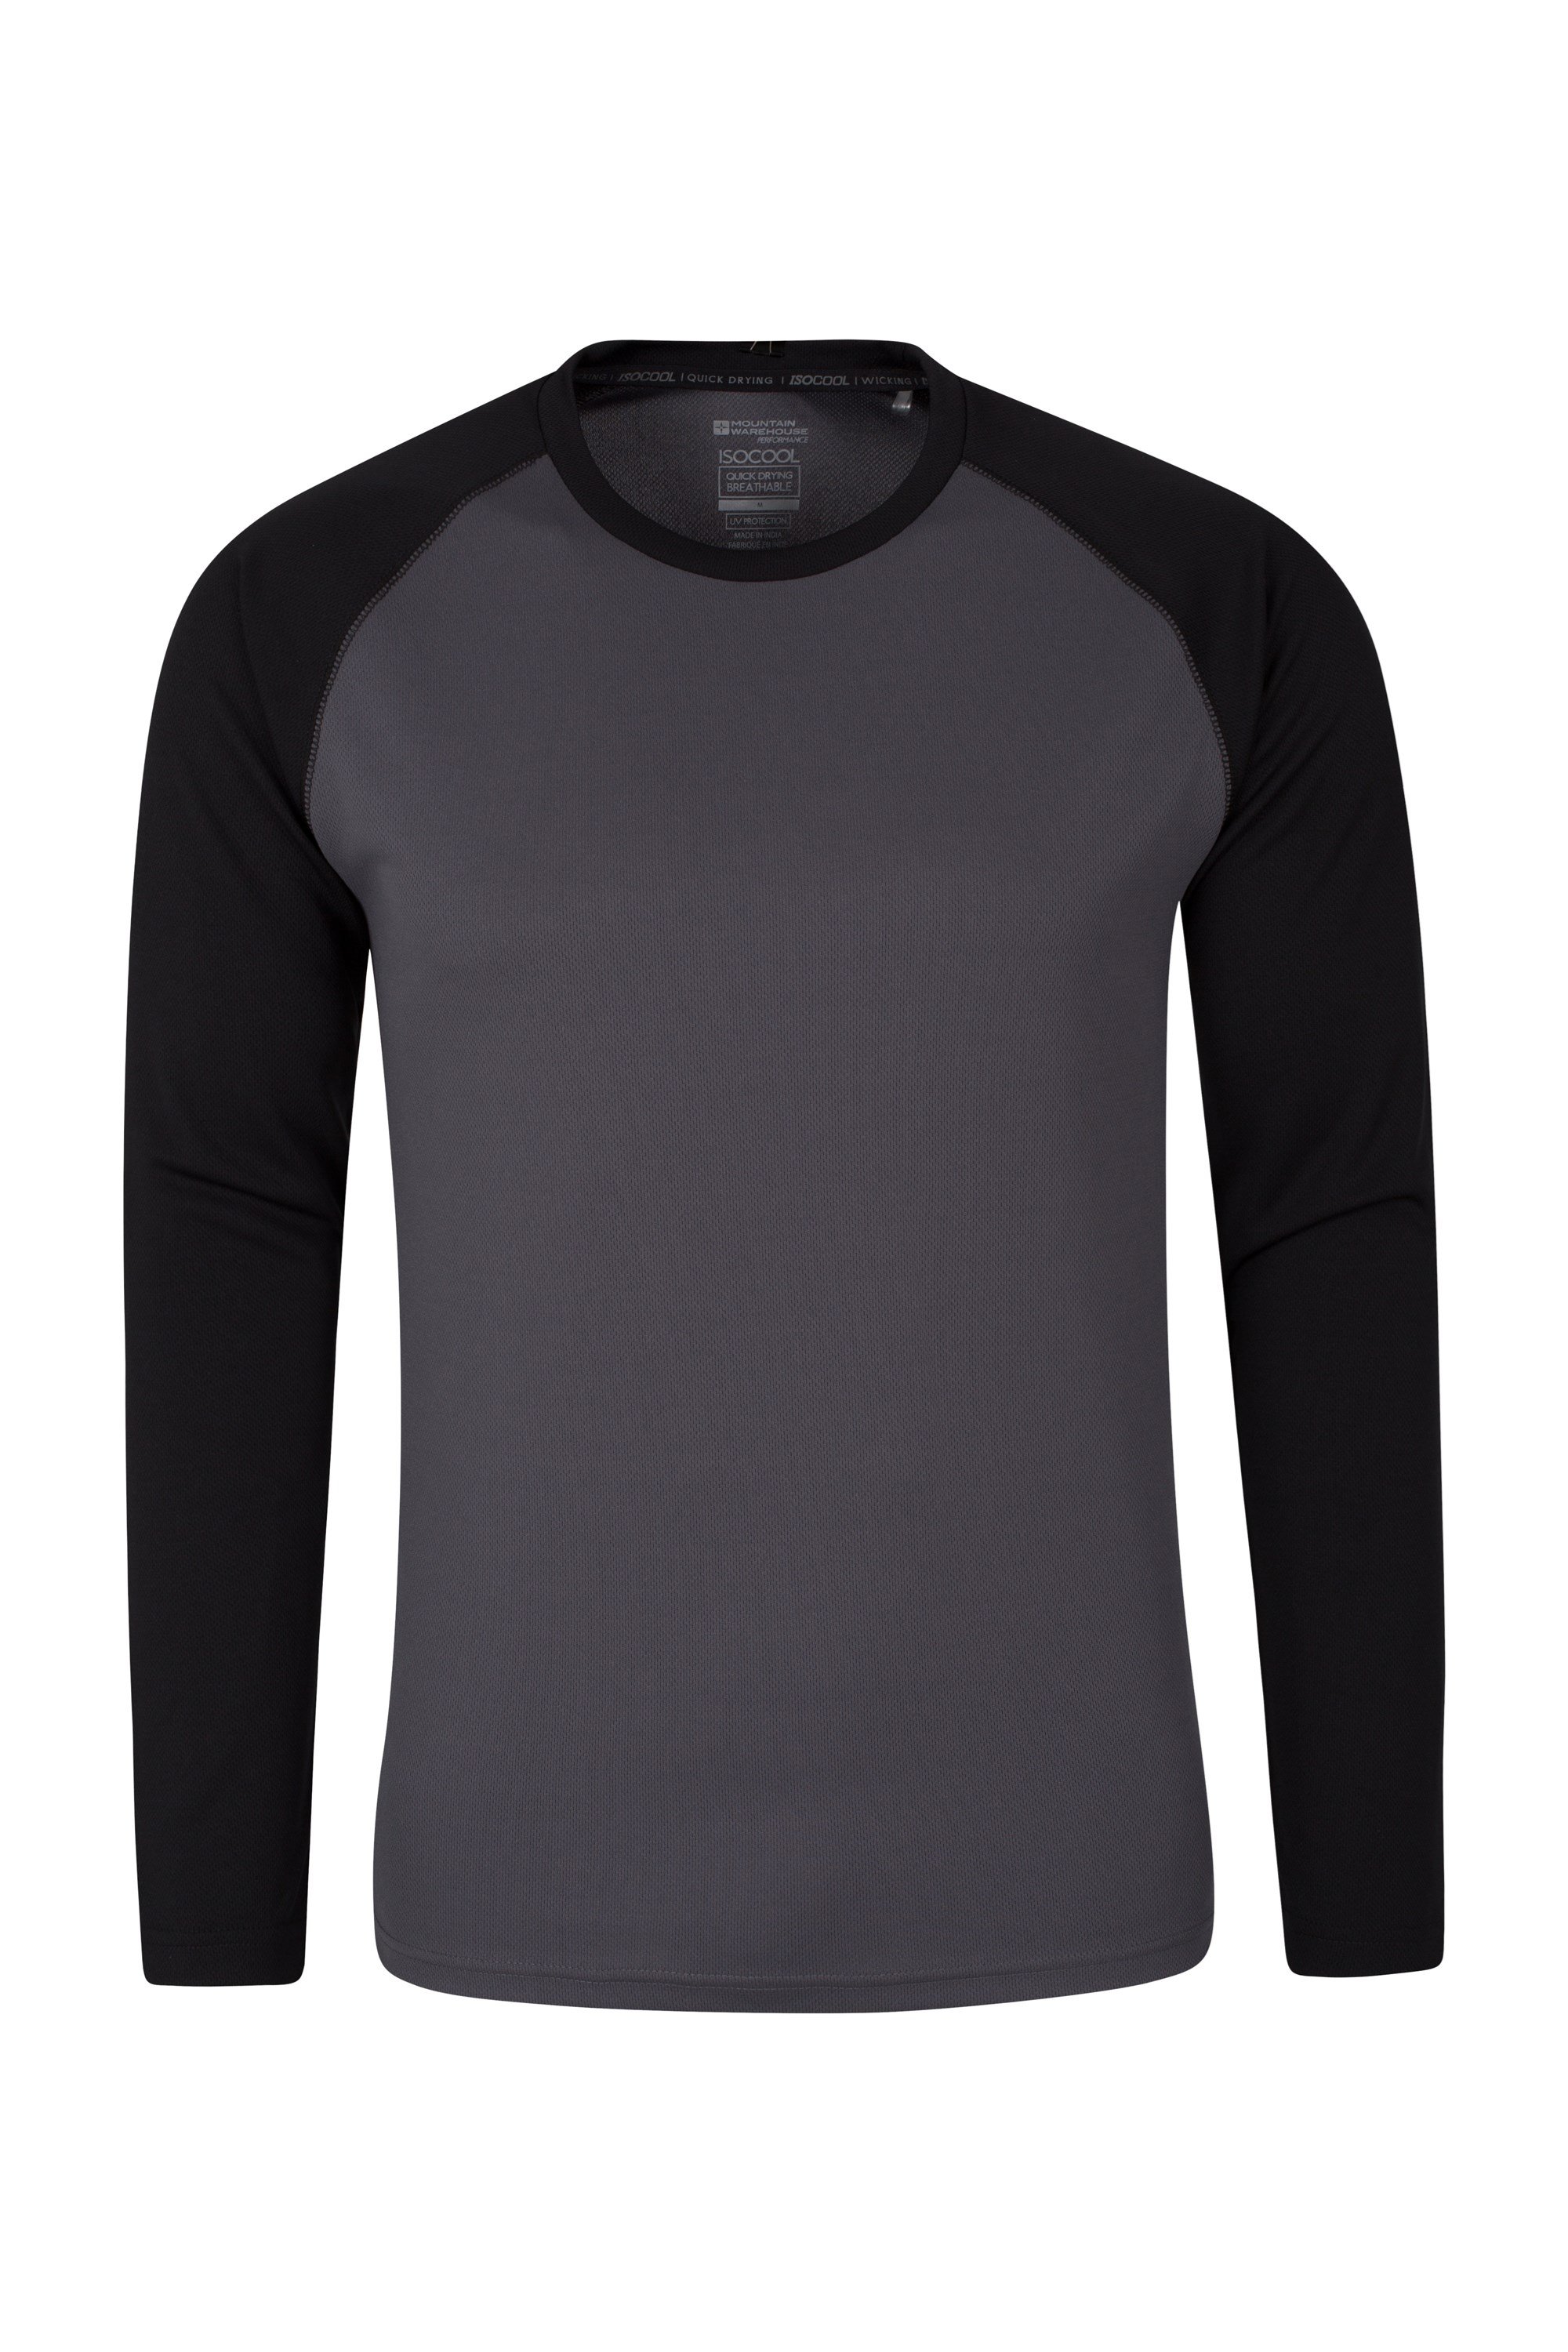 Séchage rapide Protection UV Mountain Warehouse T-shirt d’été Endurance pour femme Longues manches Pour voyages Léger course à pied et quotidien 